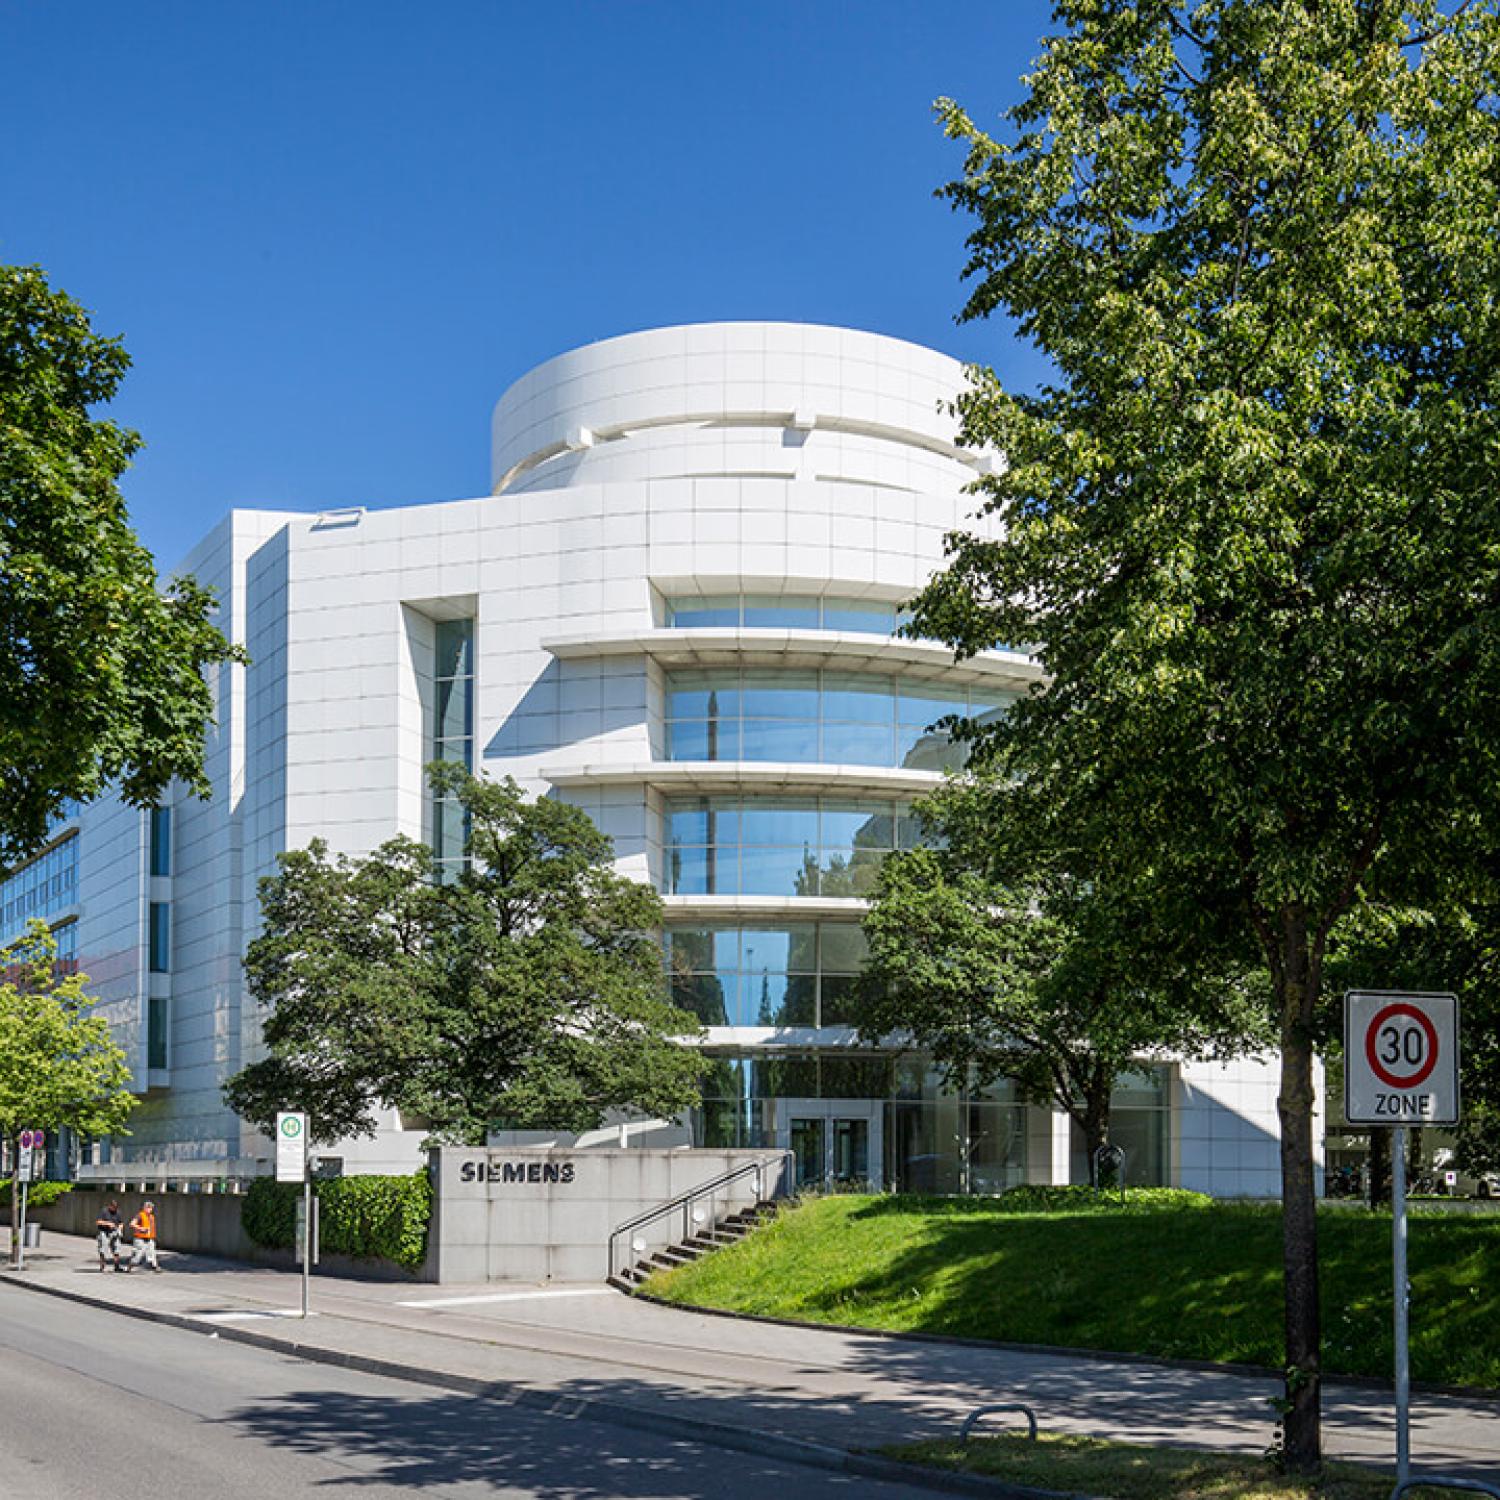 Das OSKAR vom amerikanischen Architekten und Prizker-Preisträger Richard Meier, CSMM entwickelte Konzepte für Hines' neues Quartier